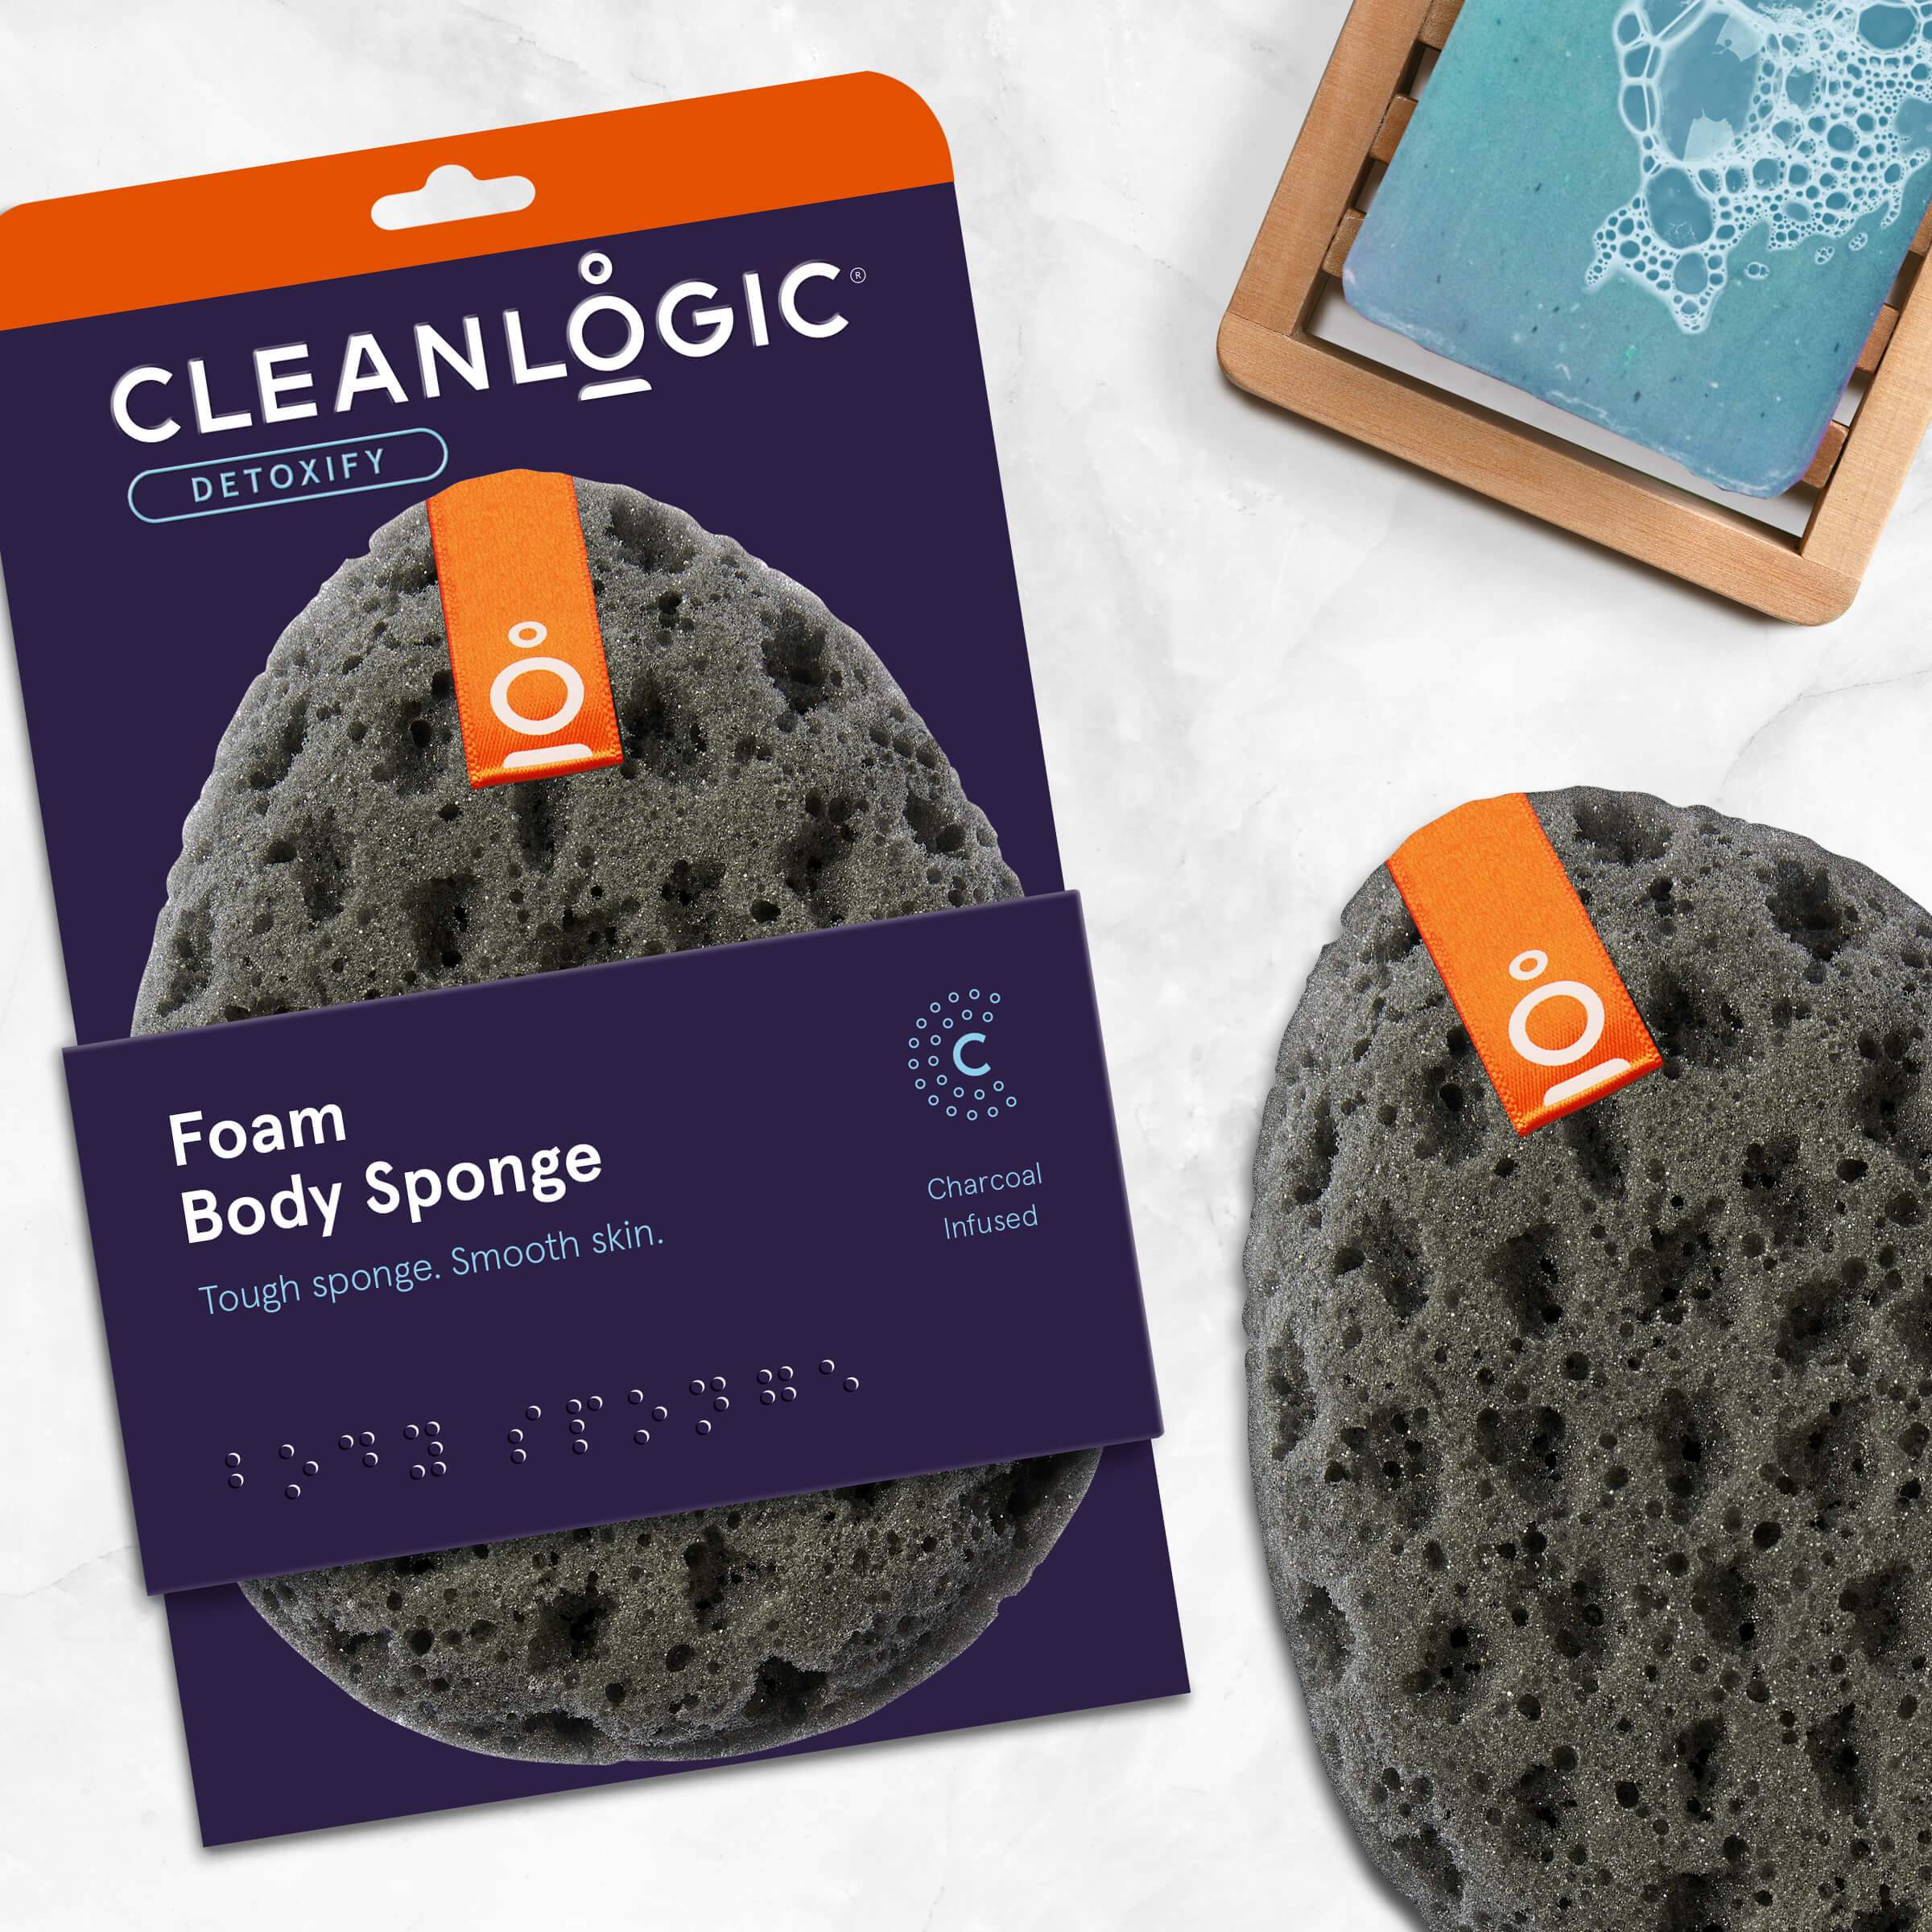 Cleanlogic Detoxify Charcoal Foam Body Sponge